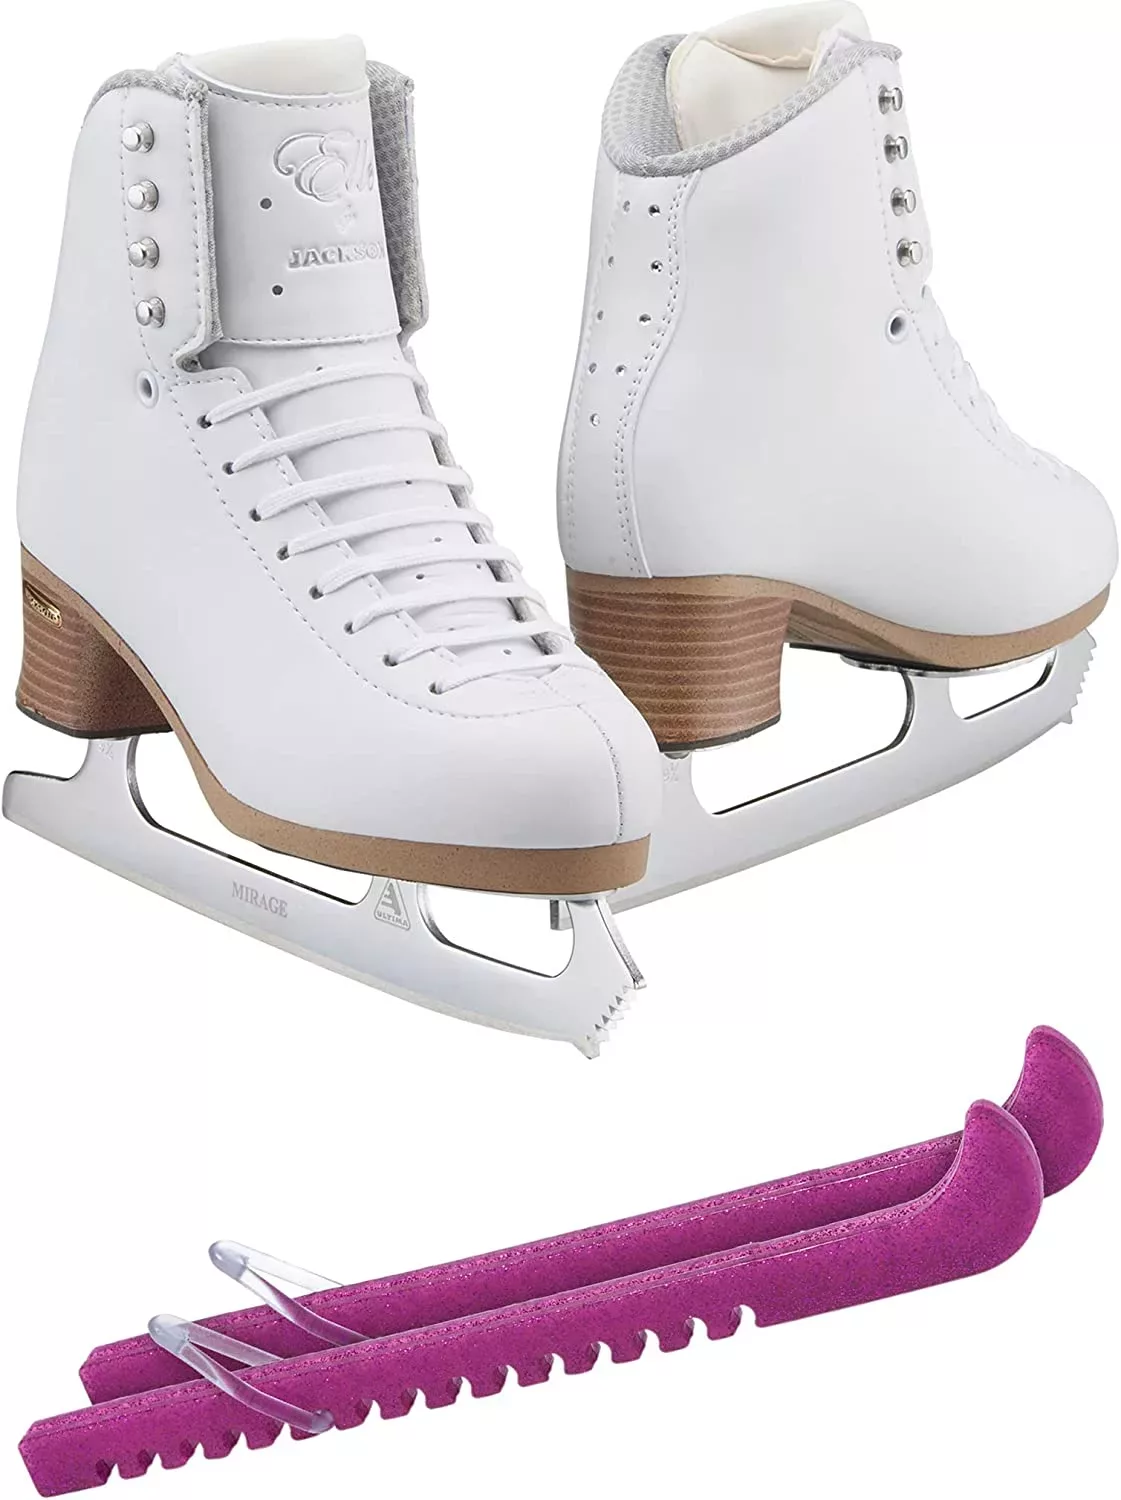 SKATE GURU Jackson Ultima Patins à glace ELLE FS2130 Bundle avec protections de patins Guardog Liasses